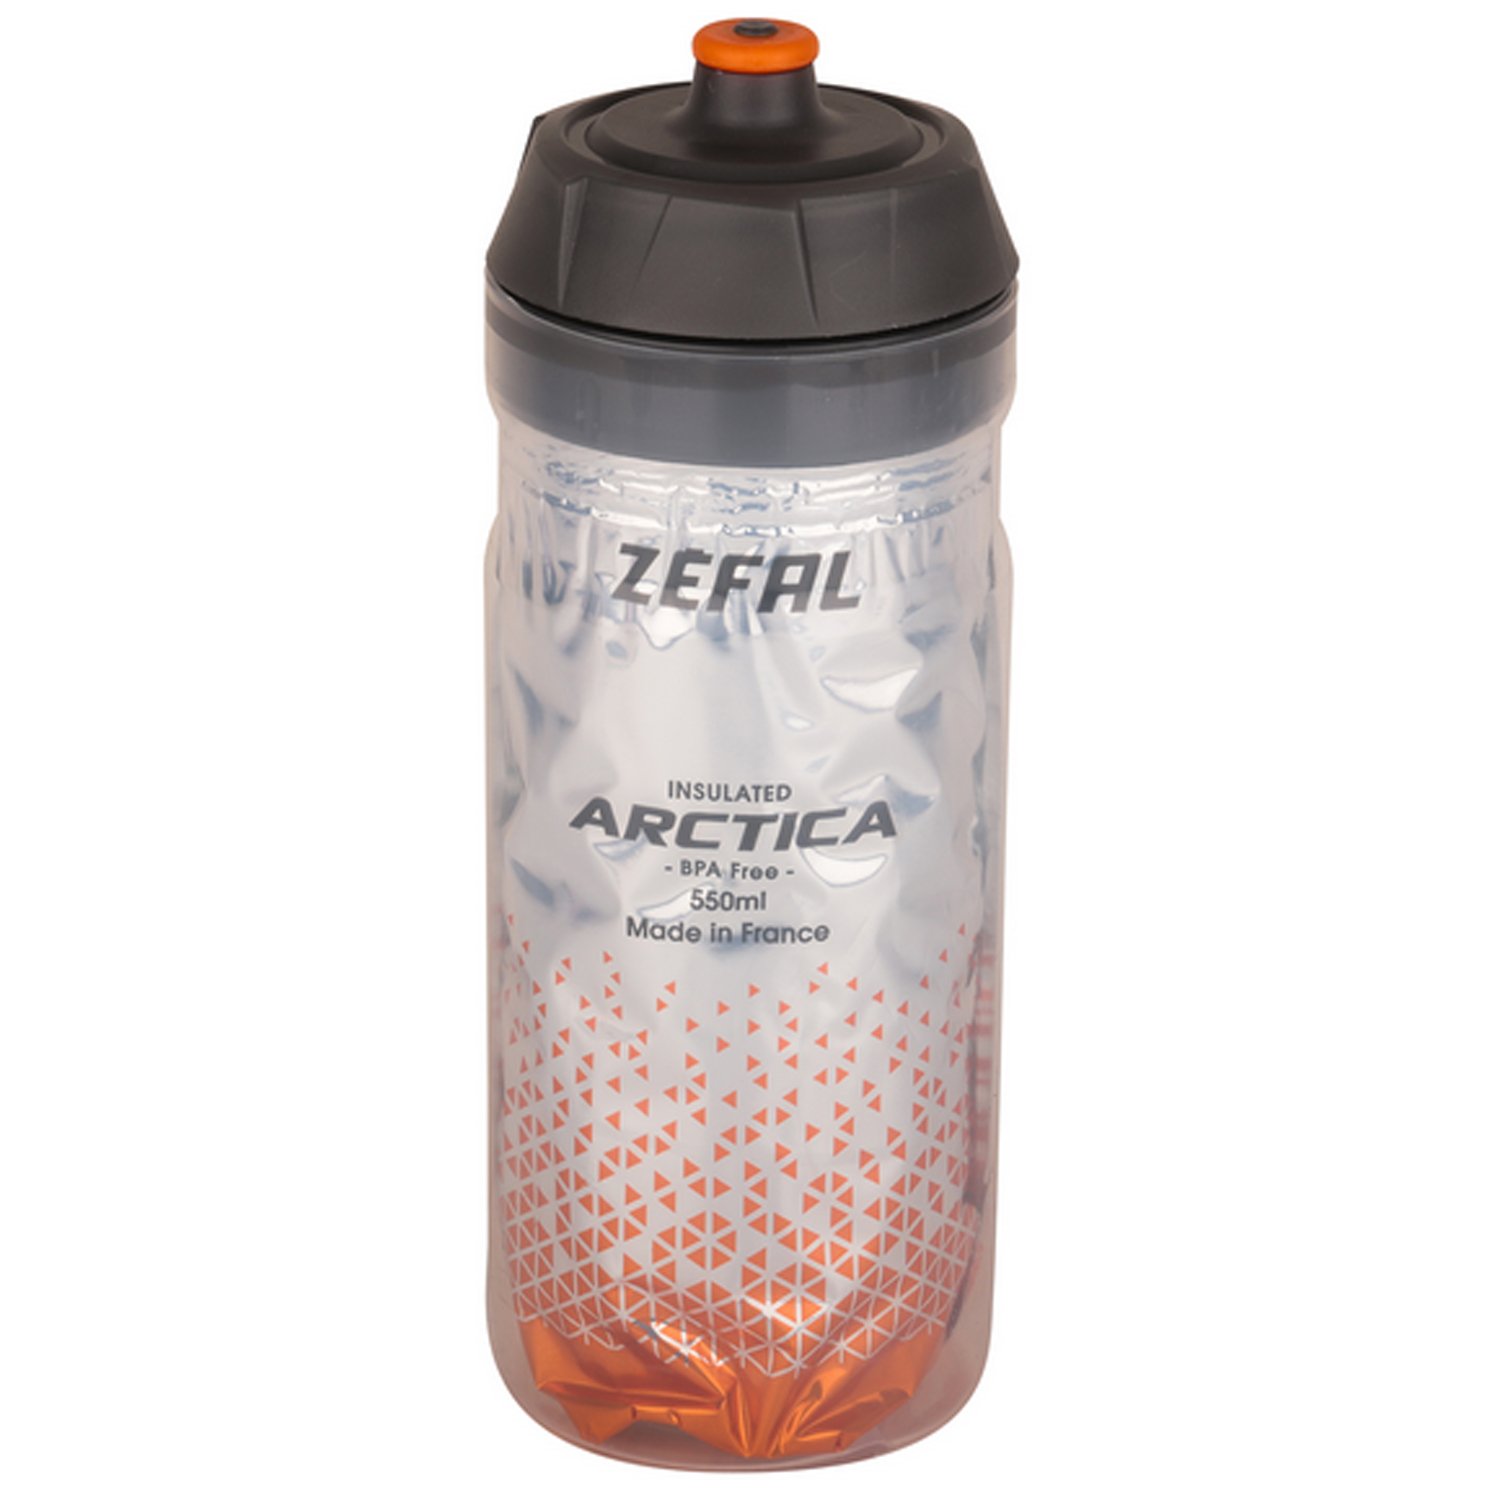 Термофляга велосипедная Zefal Arctica 55 Bottle, пластик, 550 мл, оранжевый/серый, 2023, 1664 флягодержатель велосипедный zefal pulse a2 bottle cage пластик оранжевый синий 2023 1765